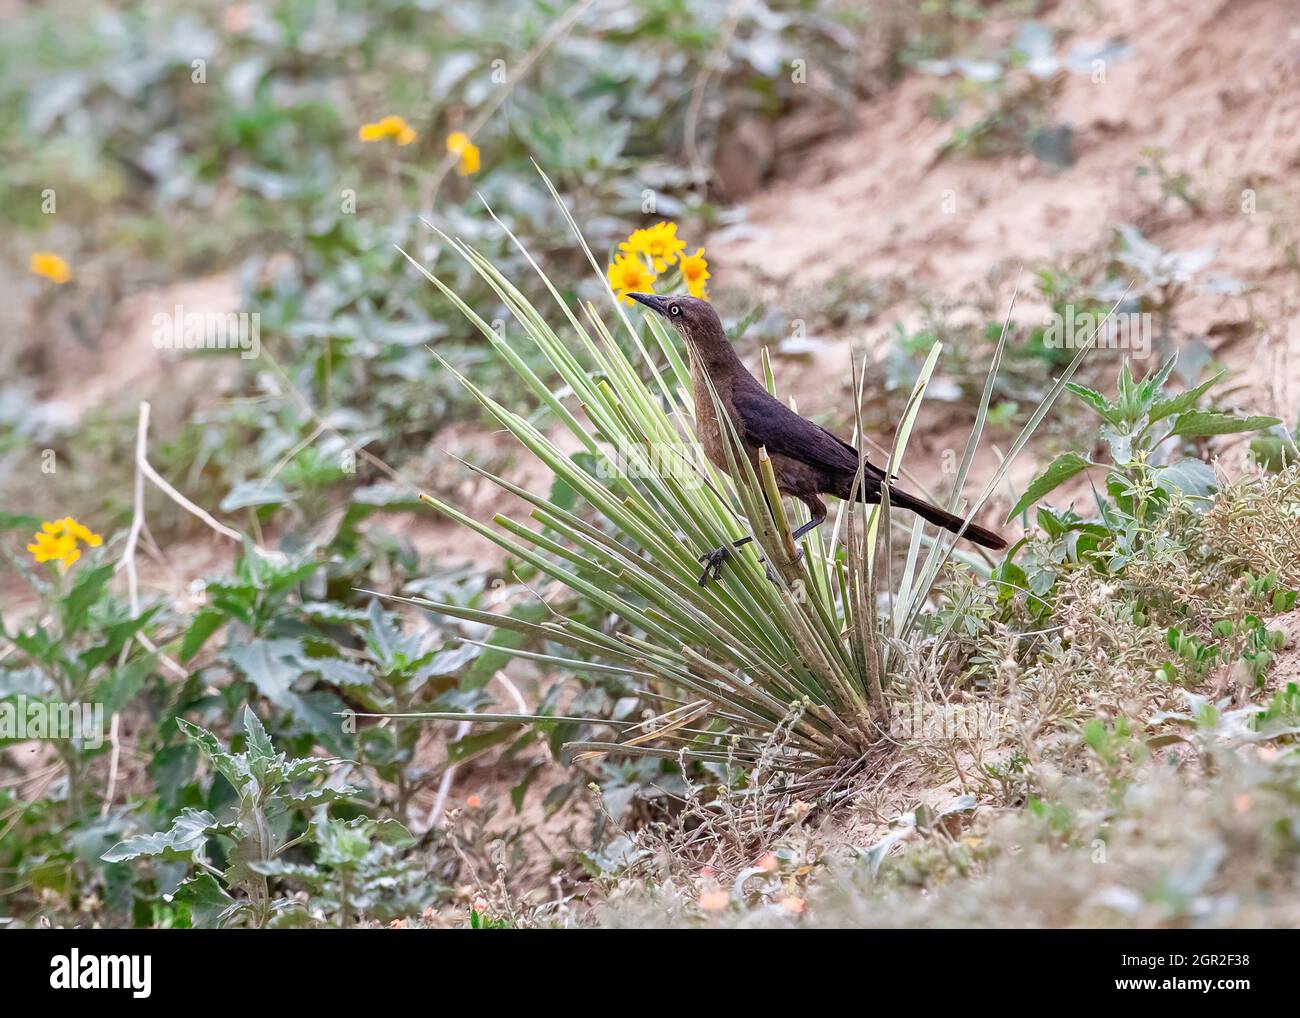 Una Grille femmina dalla coda grande in un habitat semi-arido è sapientemente arroccata su una pianta di yucca spiky. Foto Stock